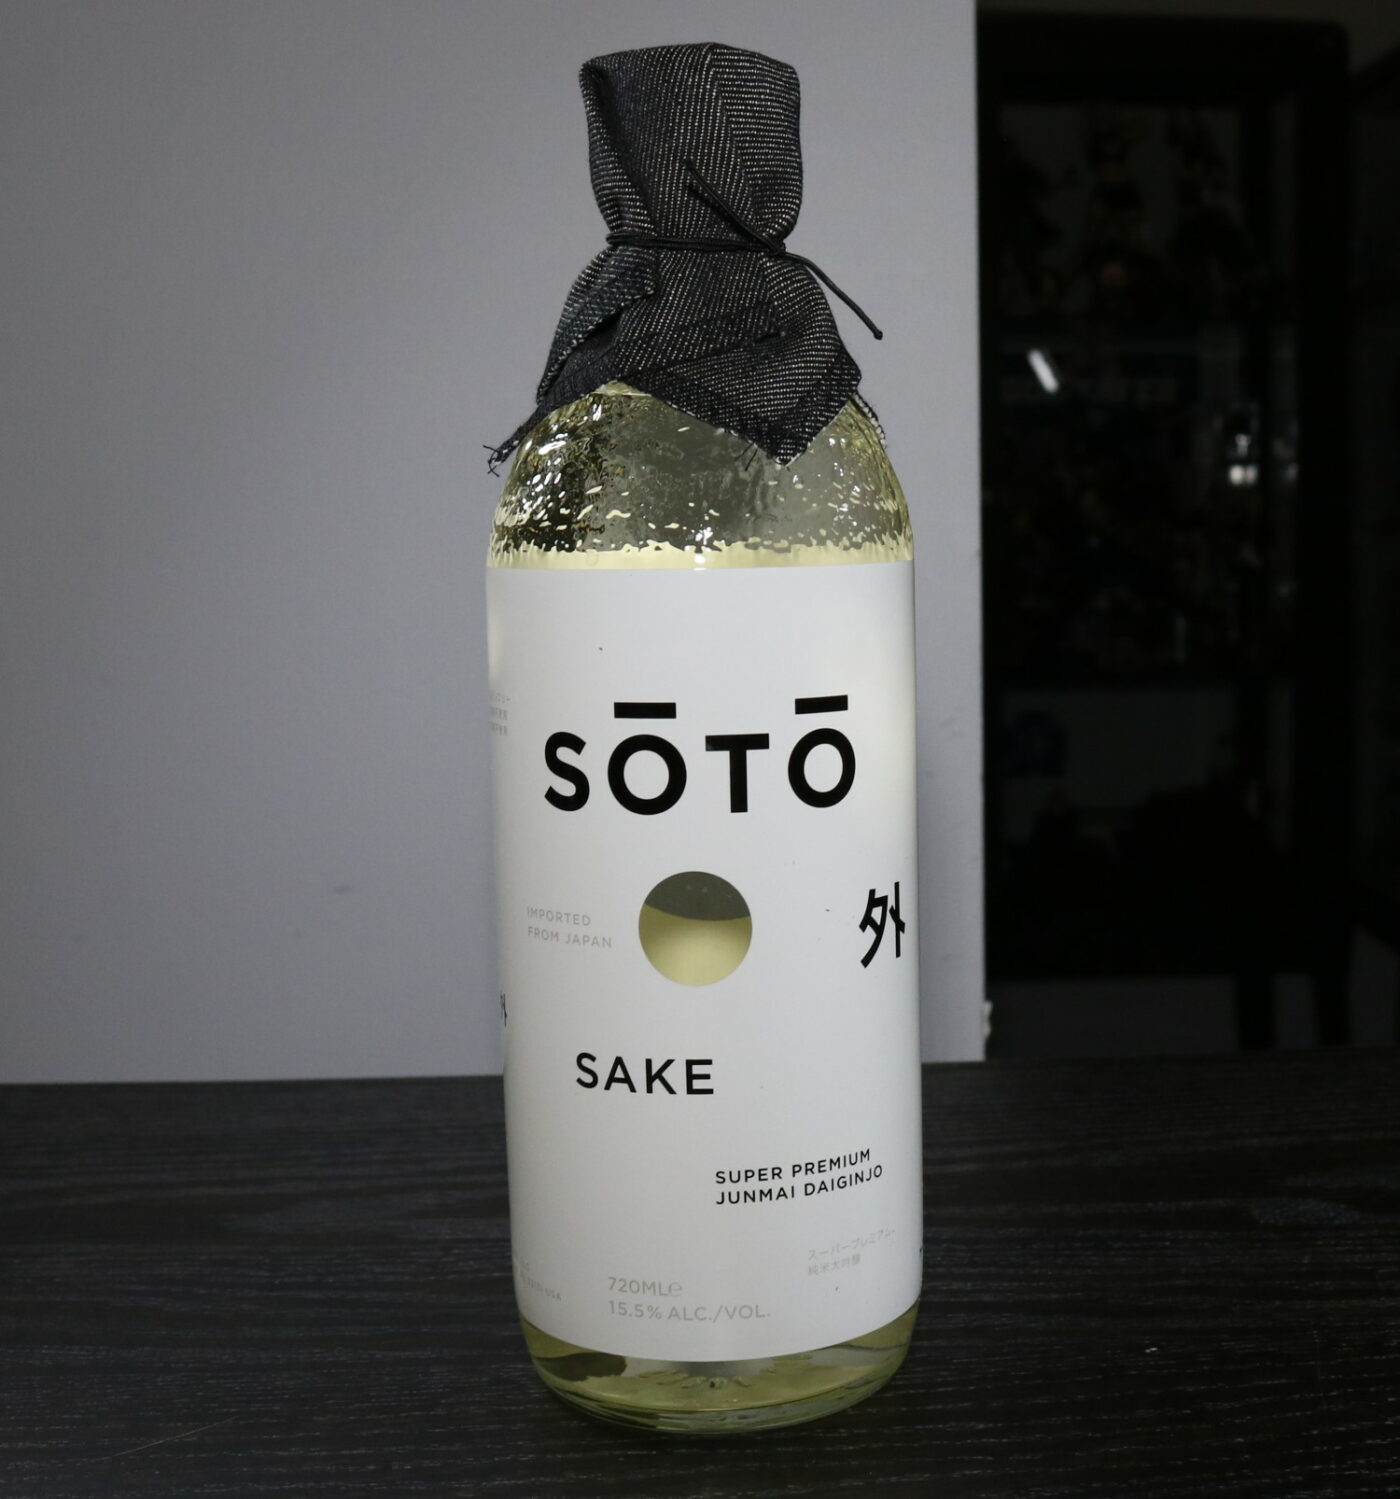 Soto sake